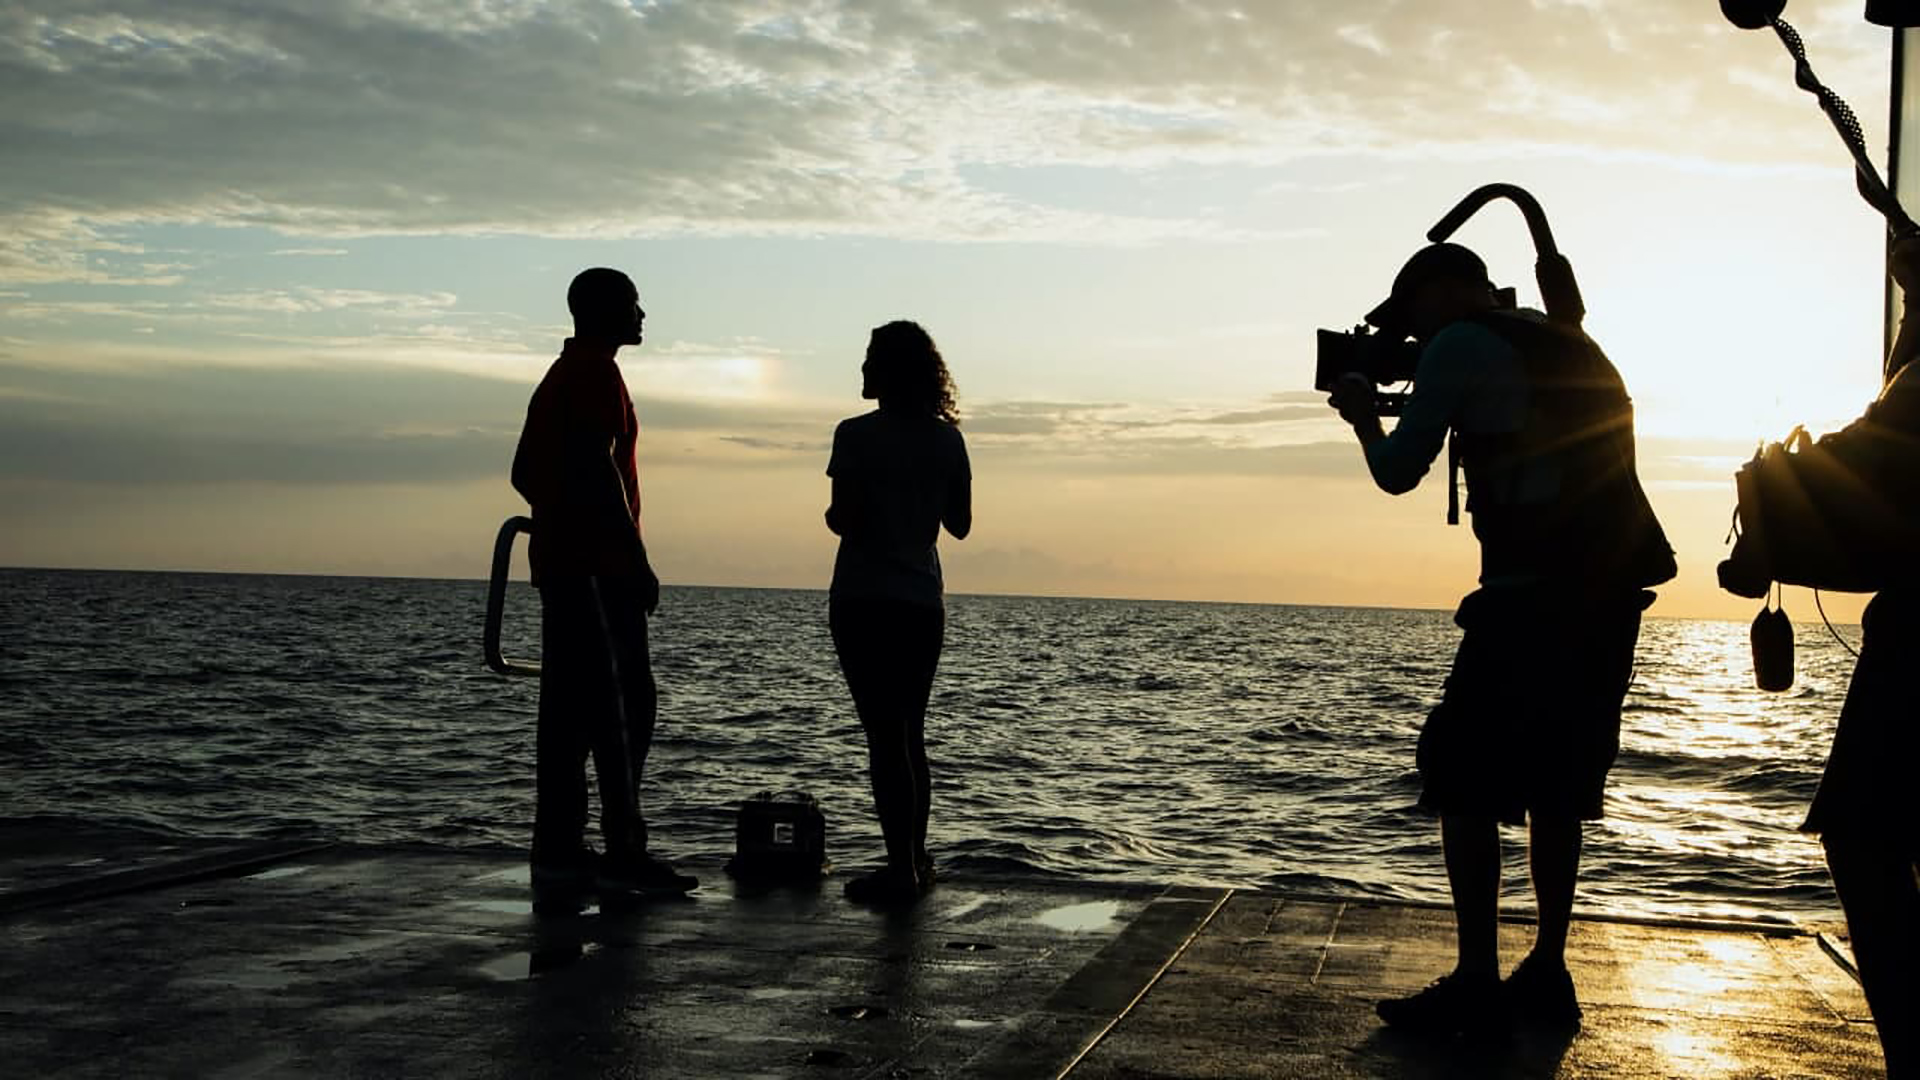 ویل اسمیت و تیمش کنار دریا در حال فیلمبرداری